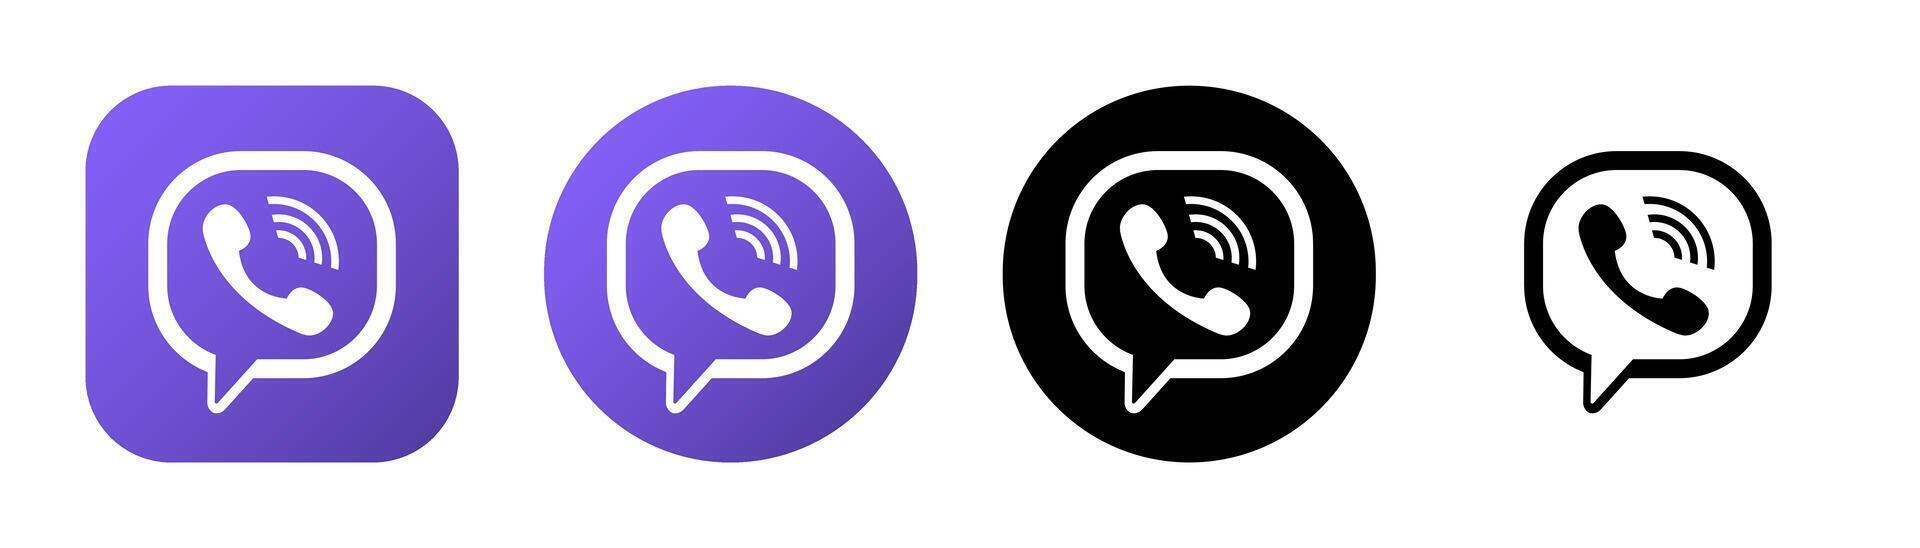 Viber logo, icon. Messenger vector